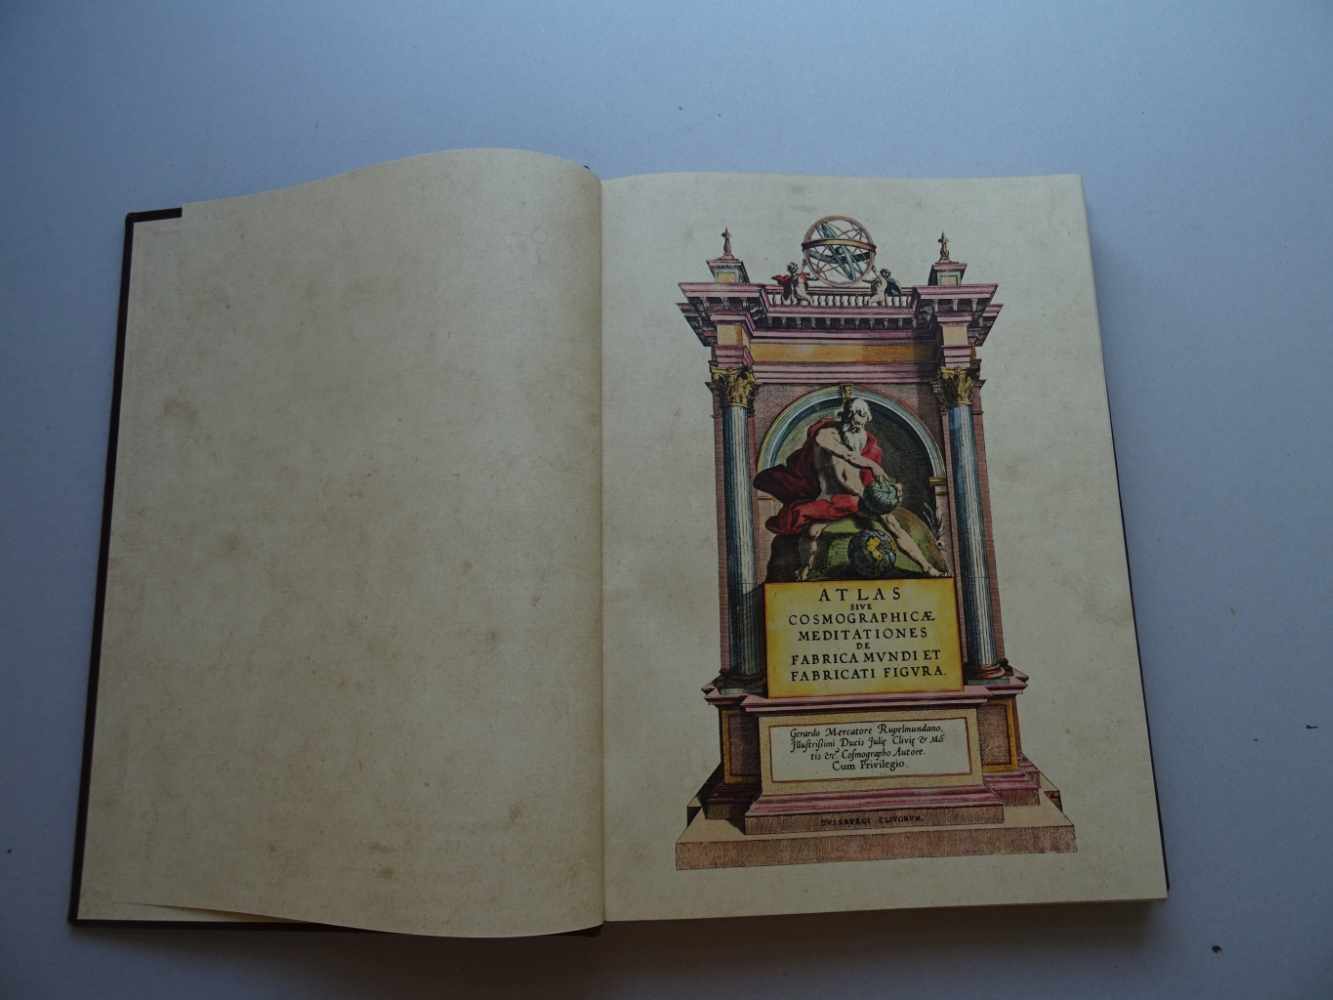 Faksimile.- Mercator, G.Atlas sive Cosmographicae meditationes de fabrica mundi et fabricati figura.